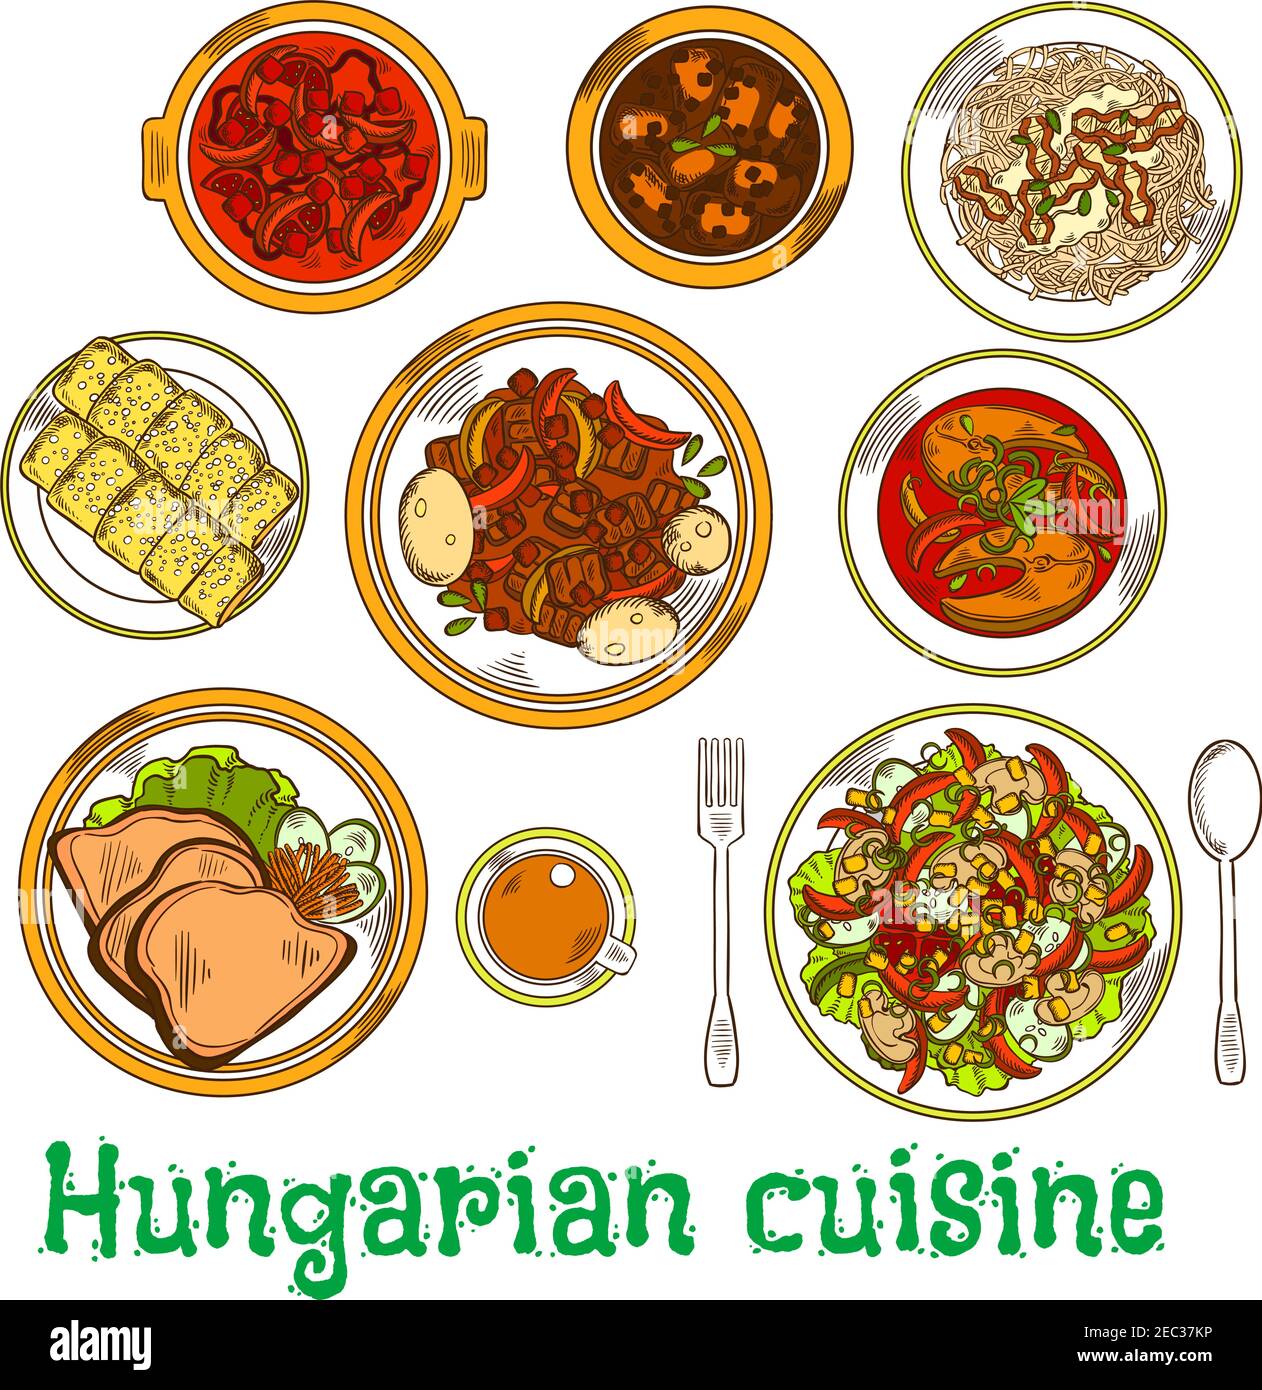 Icône traditionnelle de ragoût de viande hongroise servie avec des salades de légumes assaisonnées de vinaigre, de haricots et de soupes de poisson, pâtes nappées de fromage cottage Illustration de Vecteur